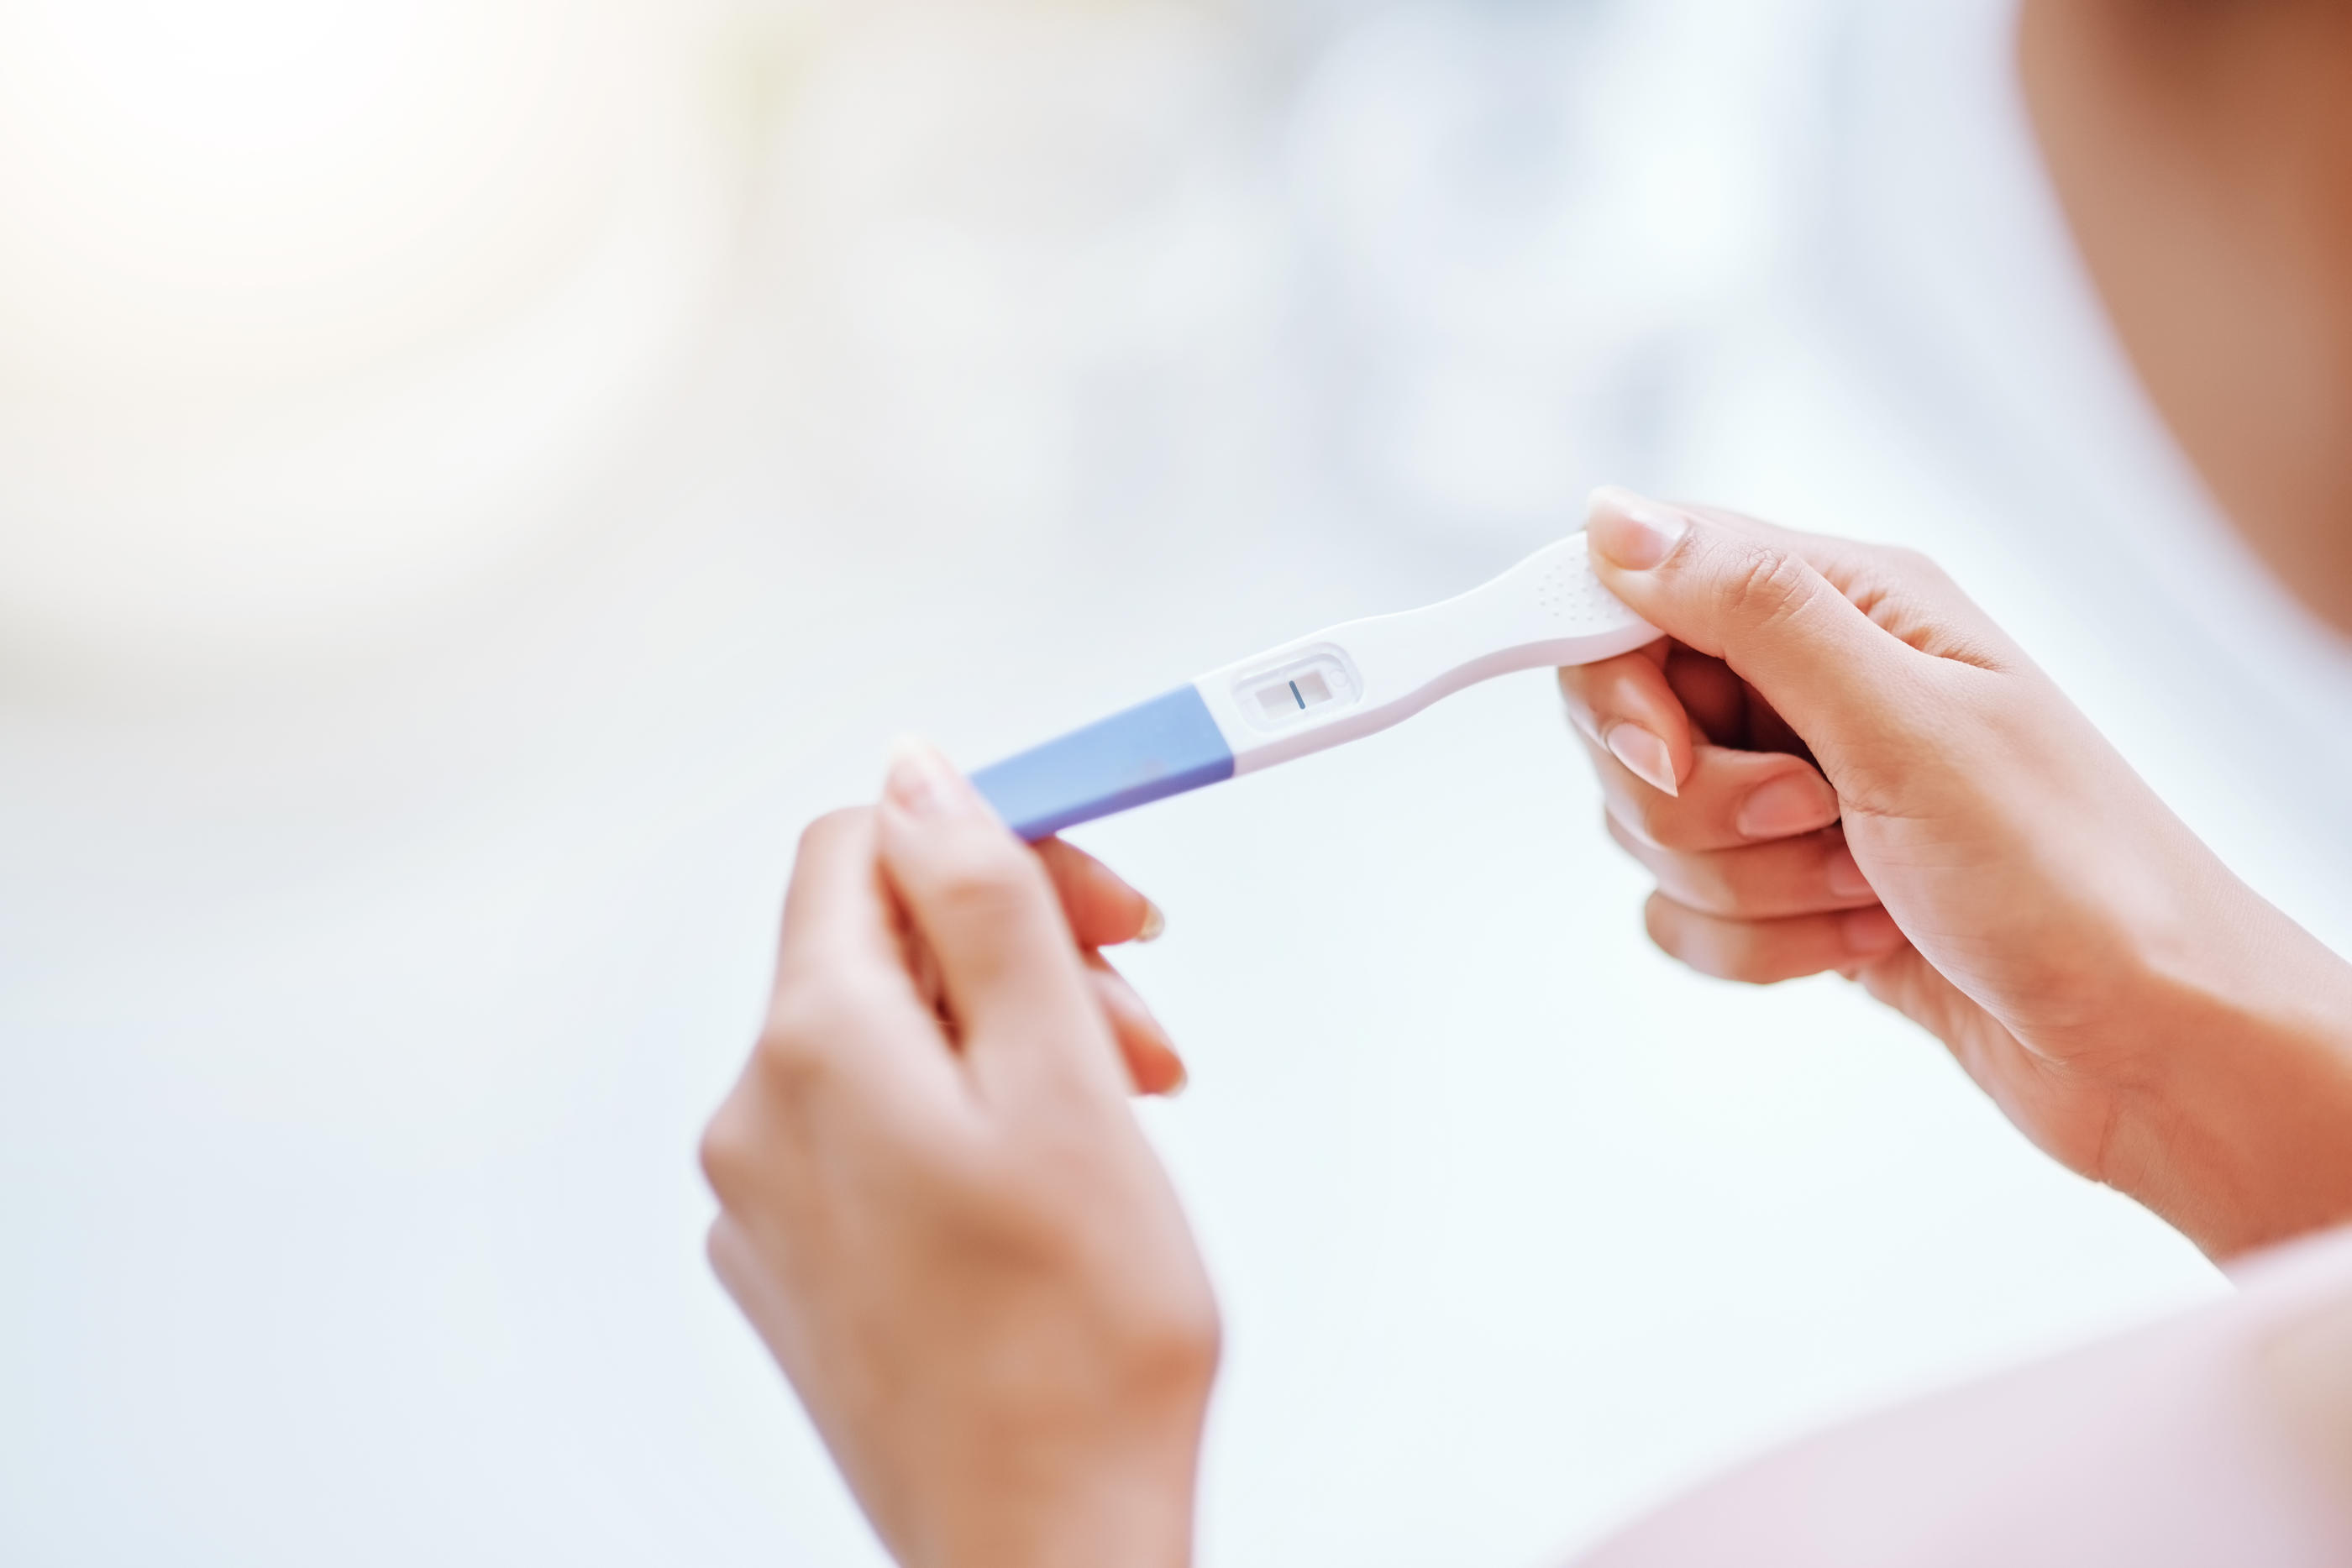 Des «défauts de sensibilité» ont été observés sur certains tests de grossesses, d'après une étude de la DGCCRF. (Illustration) iStock